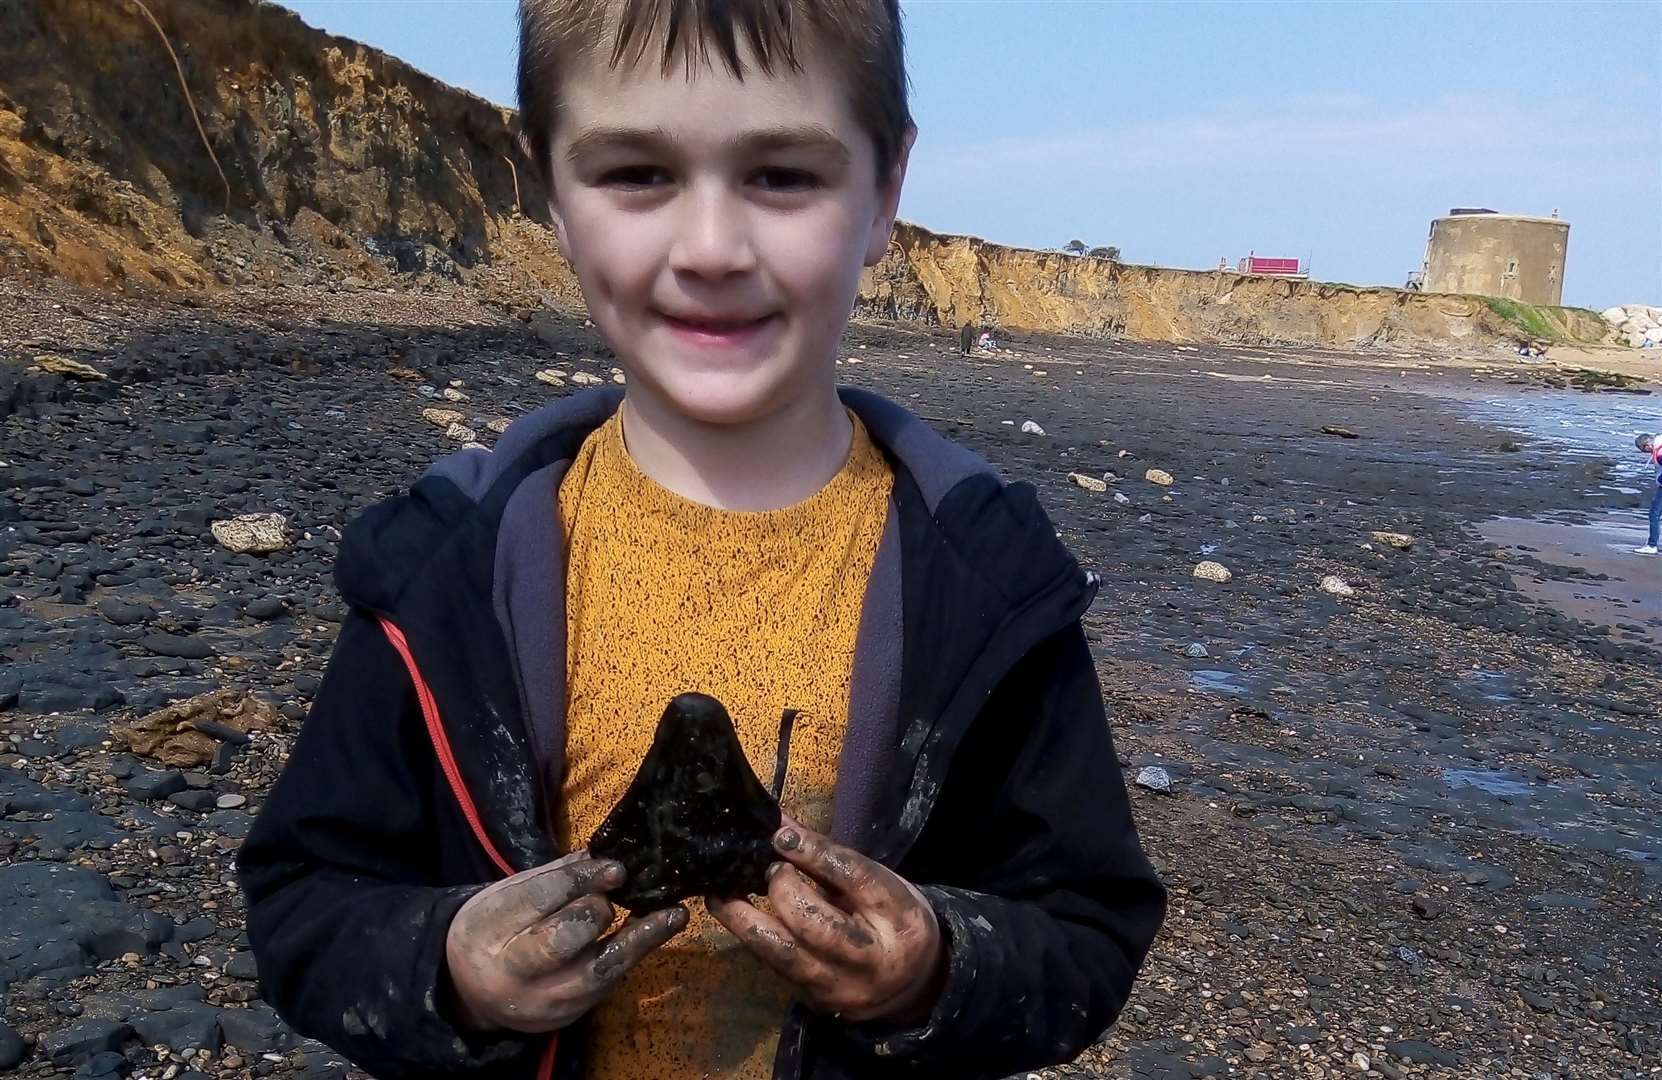 Đi dạo bờ biển, cậu bé 6 tuổi phát hiện răng cá mập cổ từng thống trị biển cả